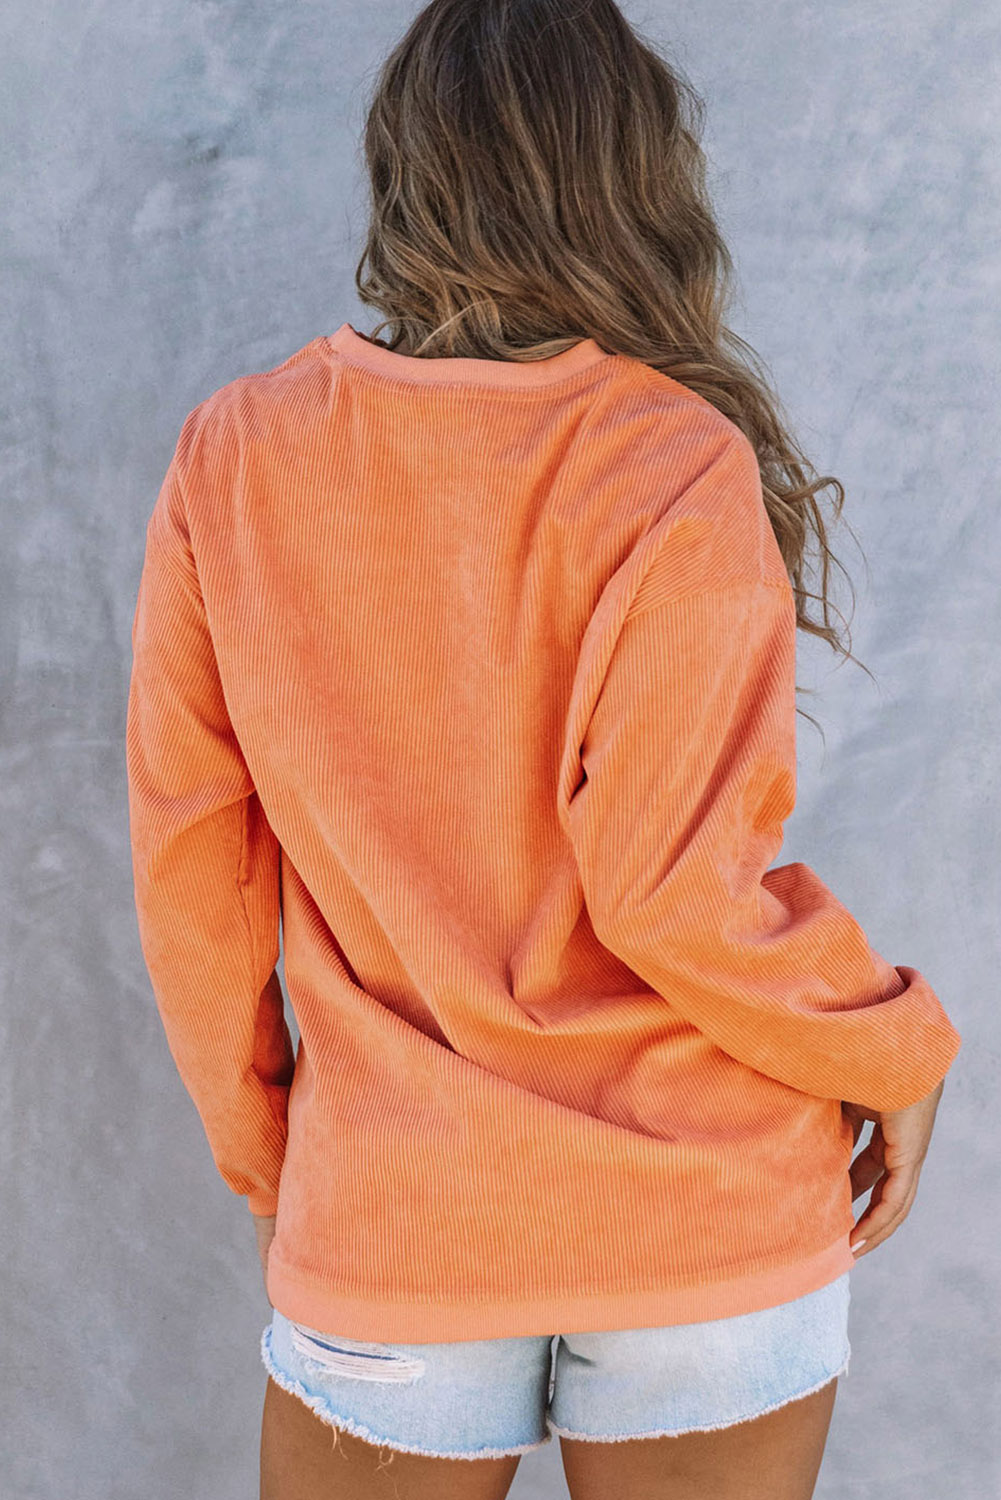 Azura Exchange Corn Graphic Orange Crop Top Sweatshirt